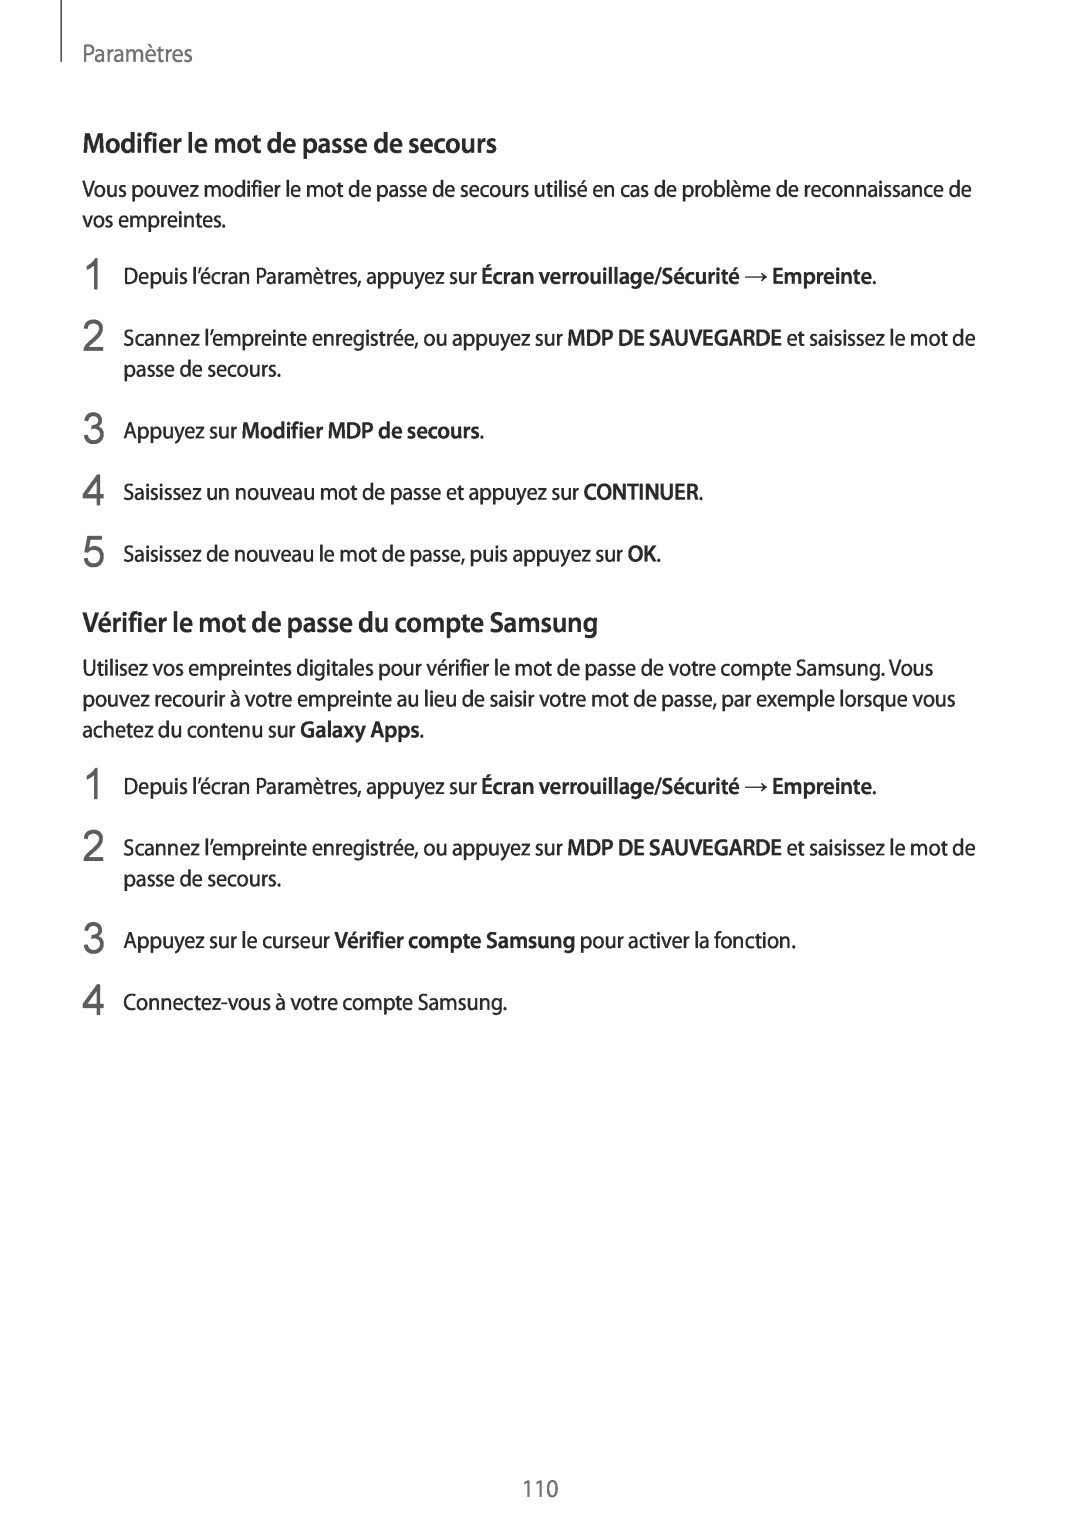 Samsung SM-G920FZBAXEF manual Modifier le mot de passe de secours, Vérifier le mot de passe du compte Samsung, Paramètres 